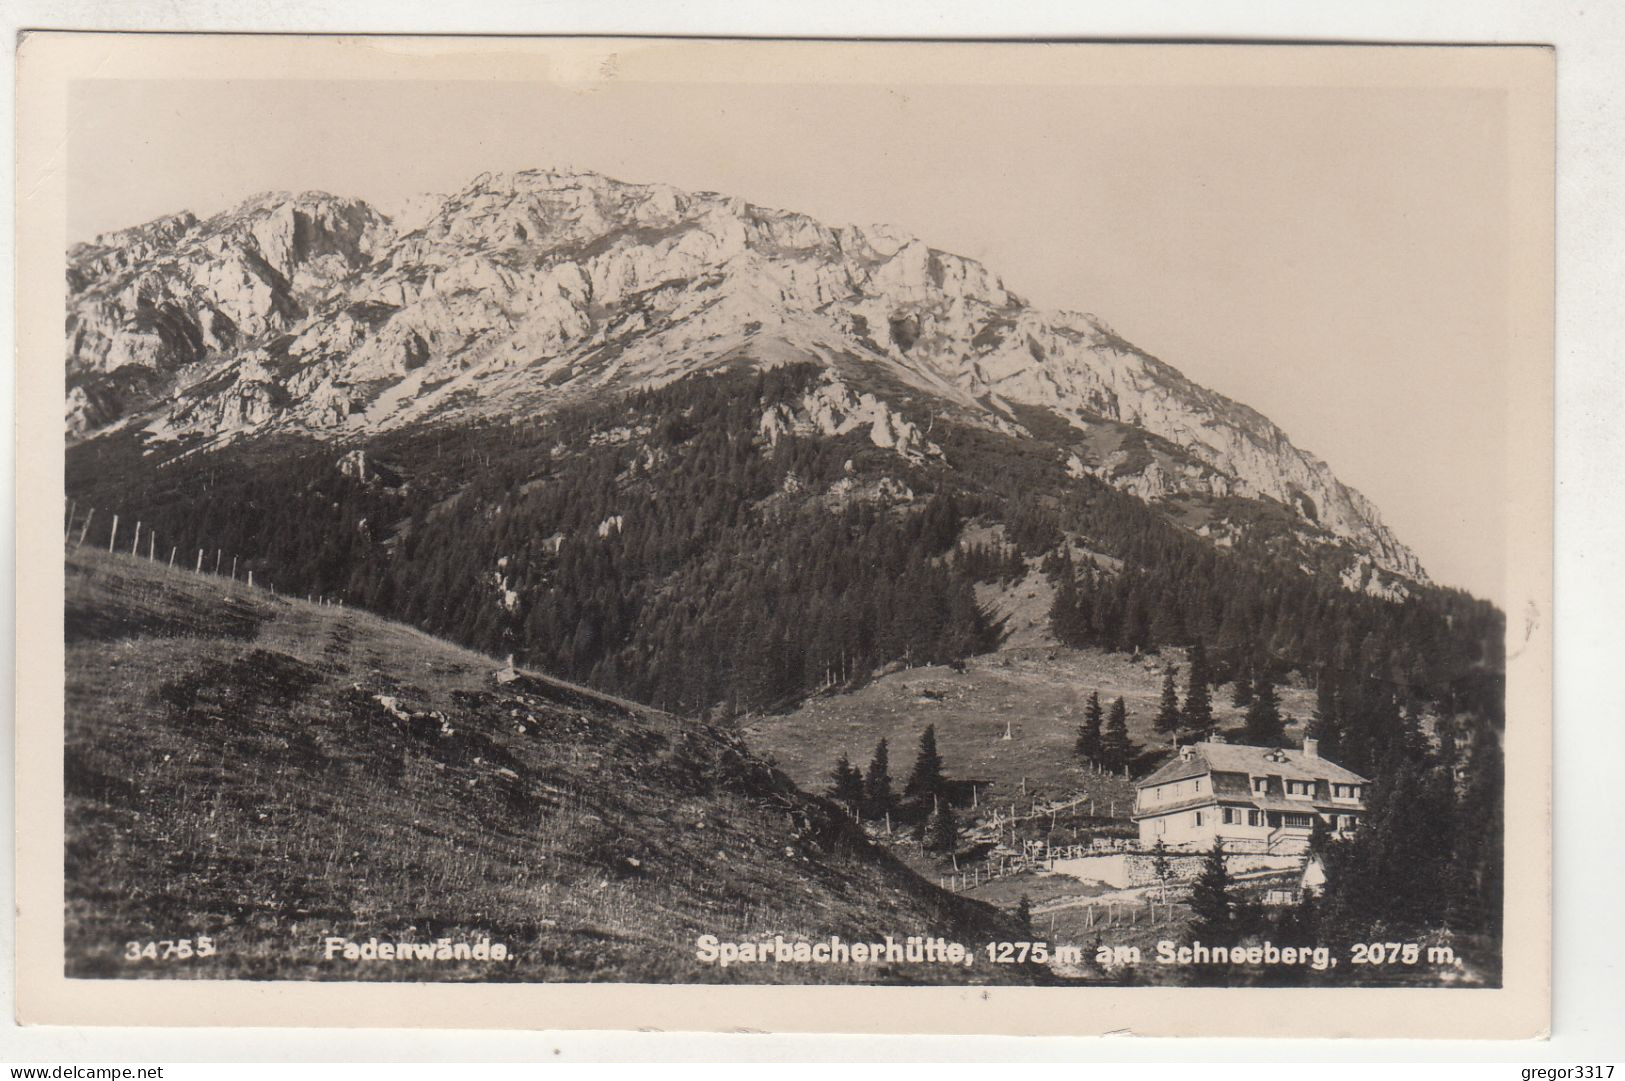 D503) SPARBACHERHÜTTE Am Schneeberg - Fadenwände ALT ! Feldpost GLOGGNITZ 1942 - Schneeberggebiet